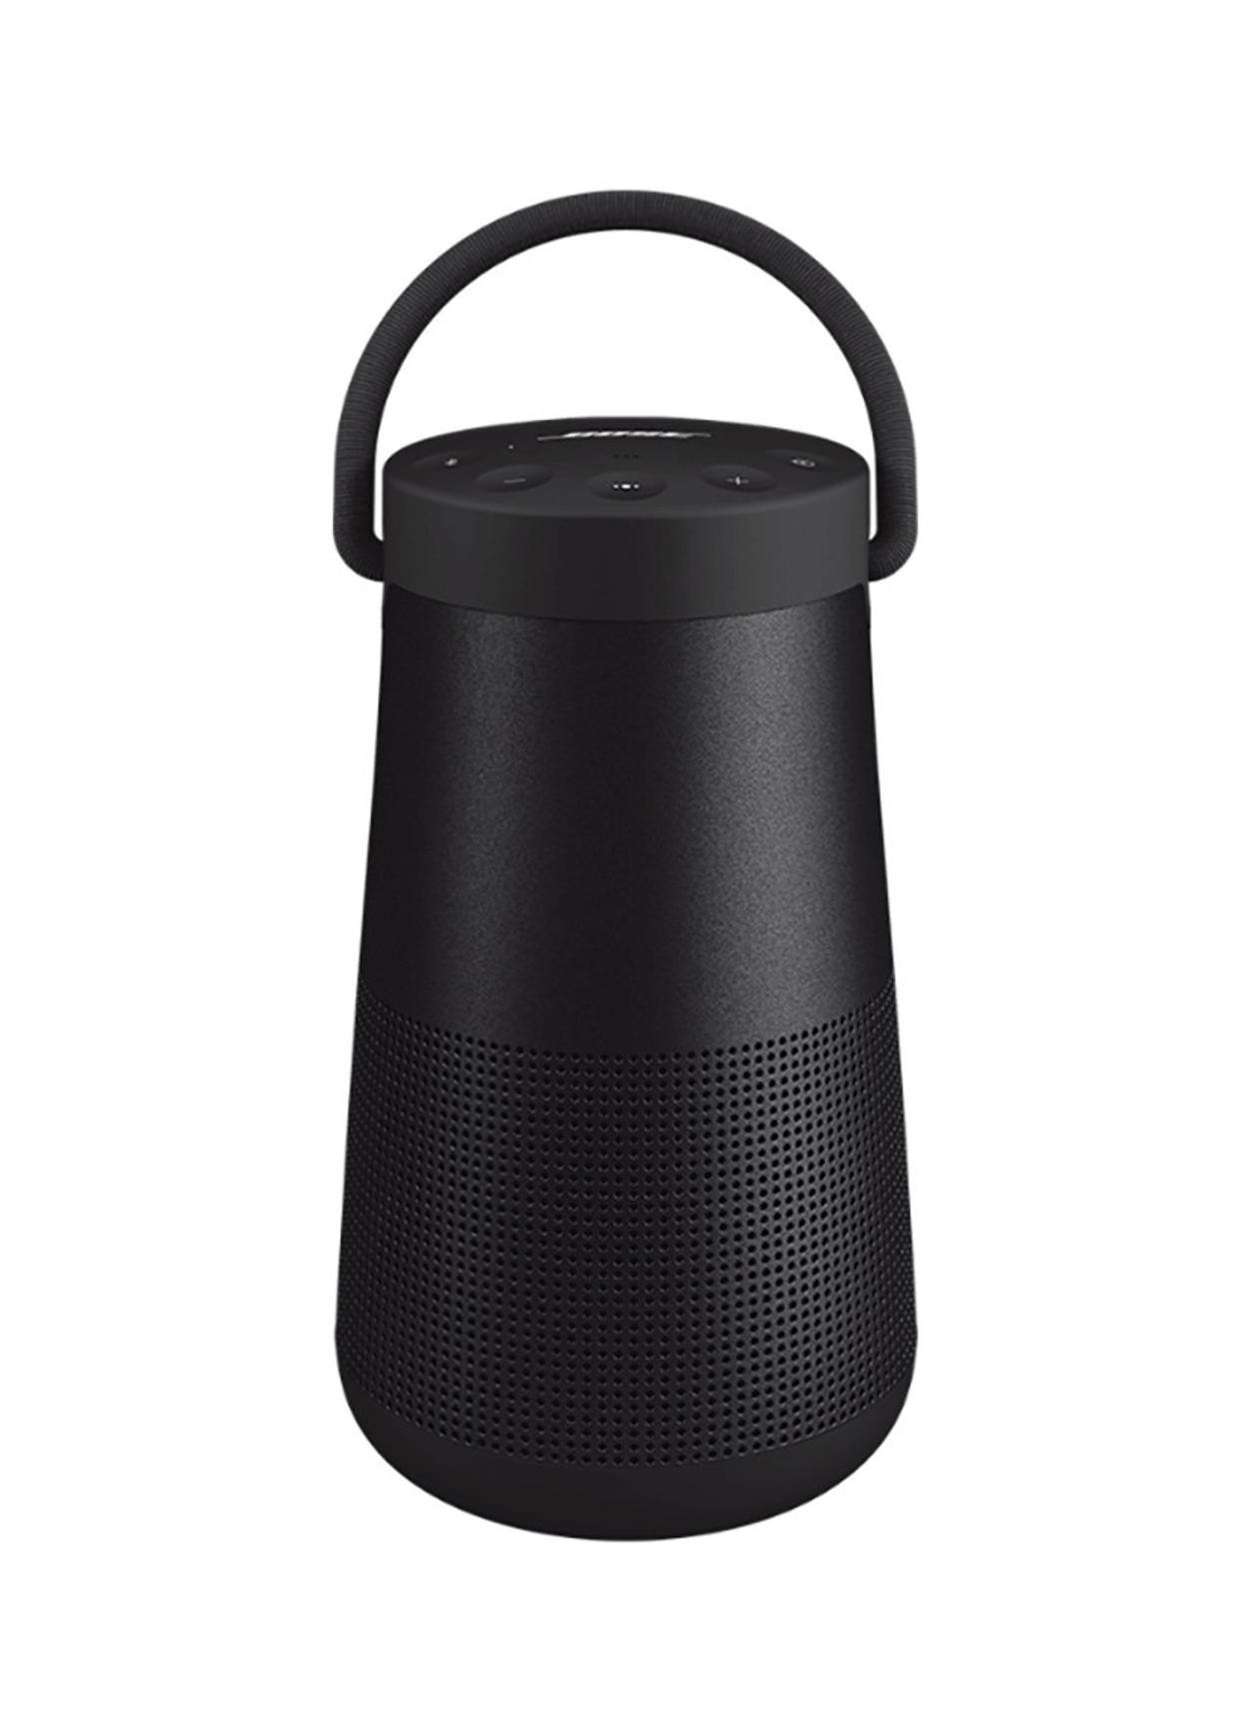 Bose Soft Black SoundLink Revolve + II Bluetooth speaker